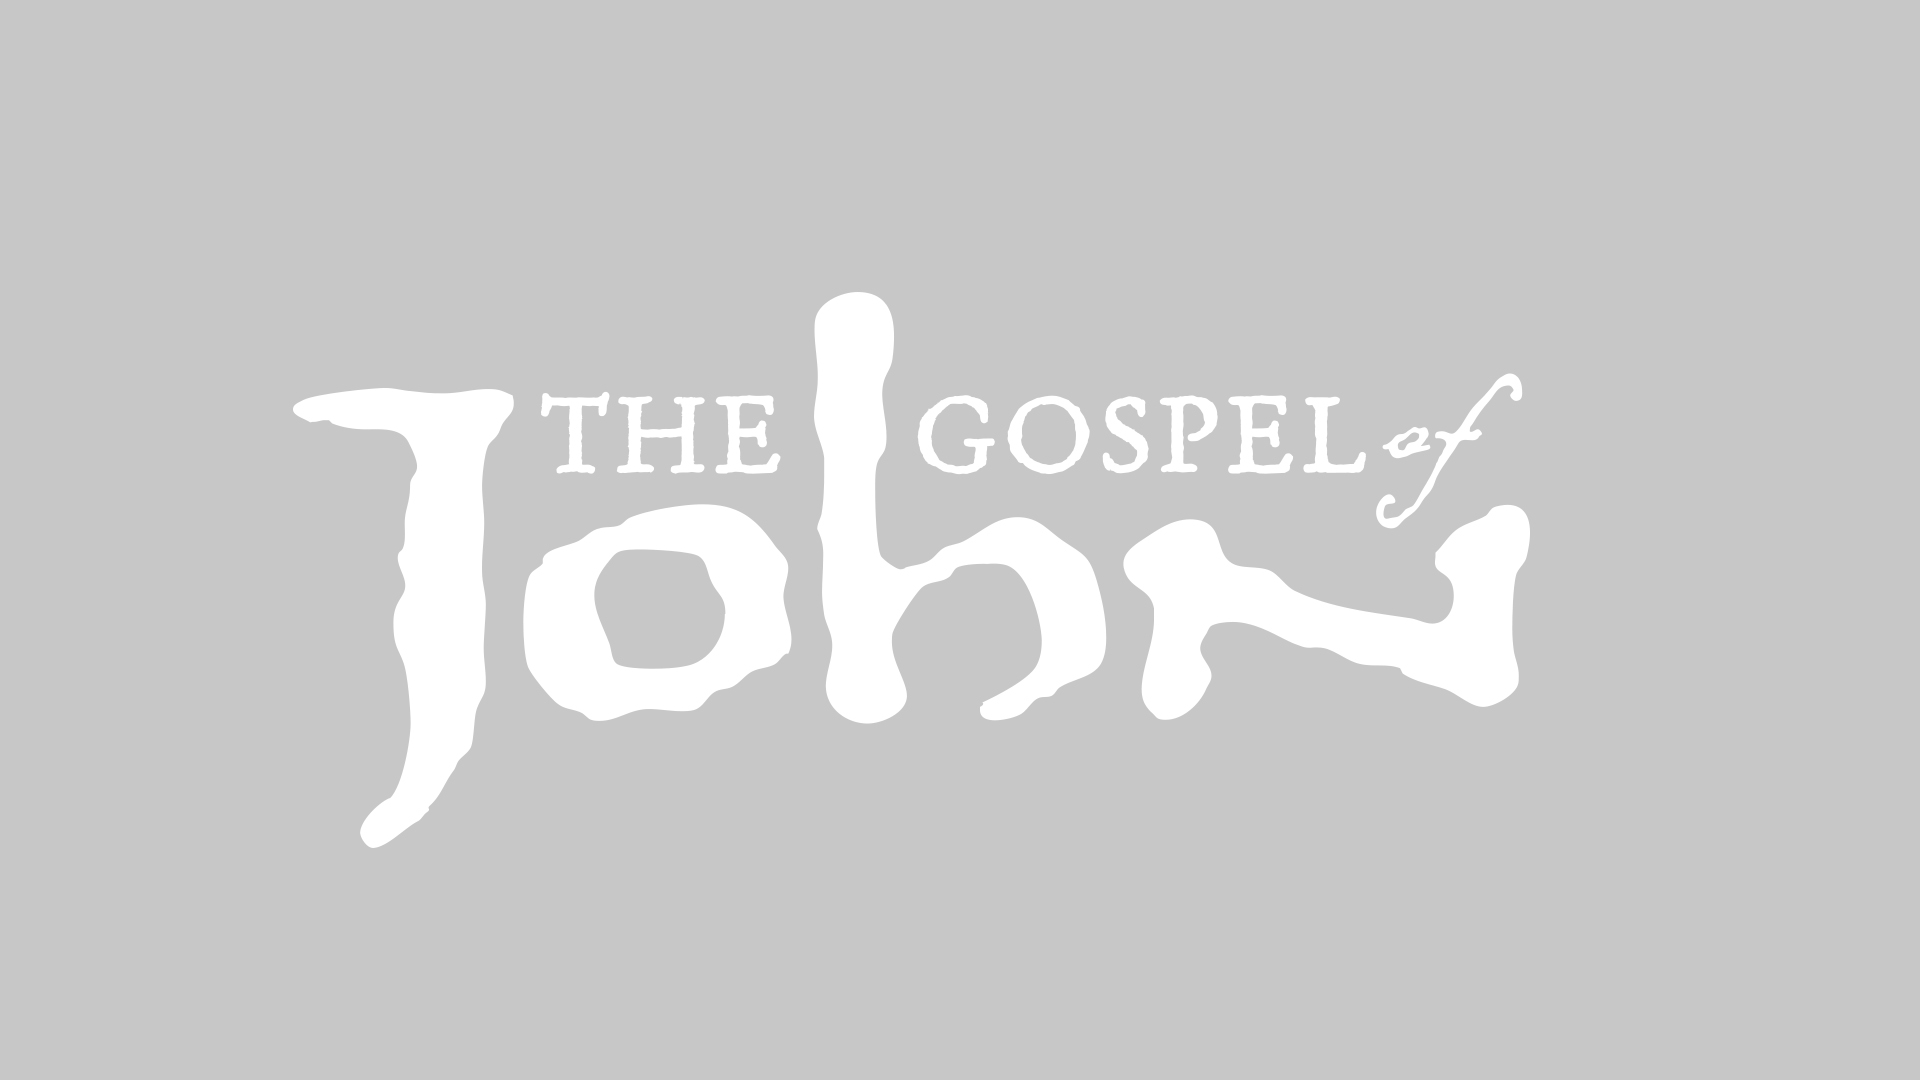 The Gospel of John series